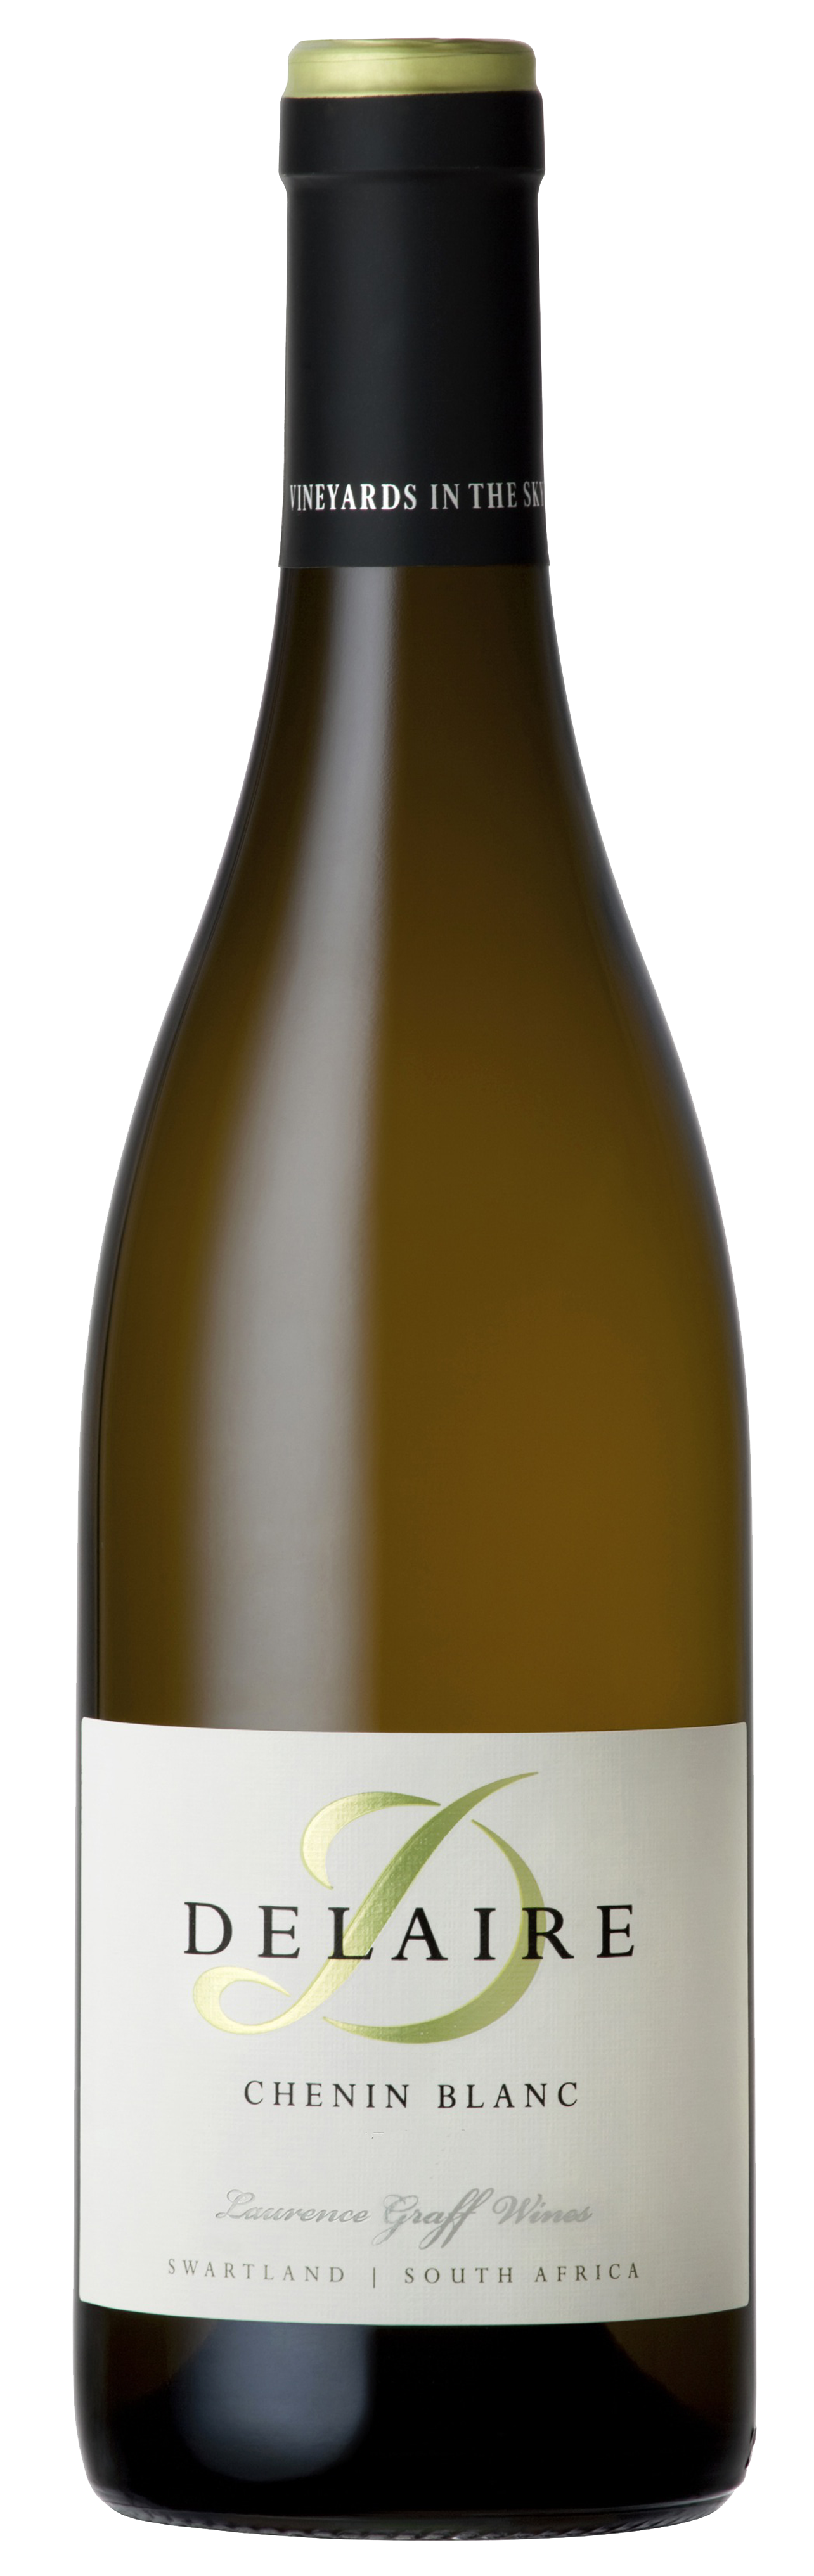 Bottle shot of 2013 Chenin Blanc